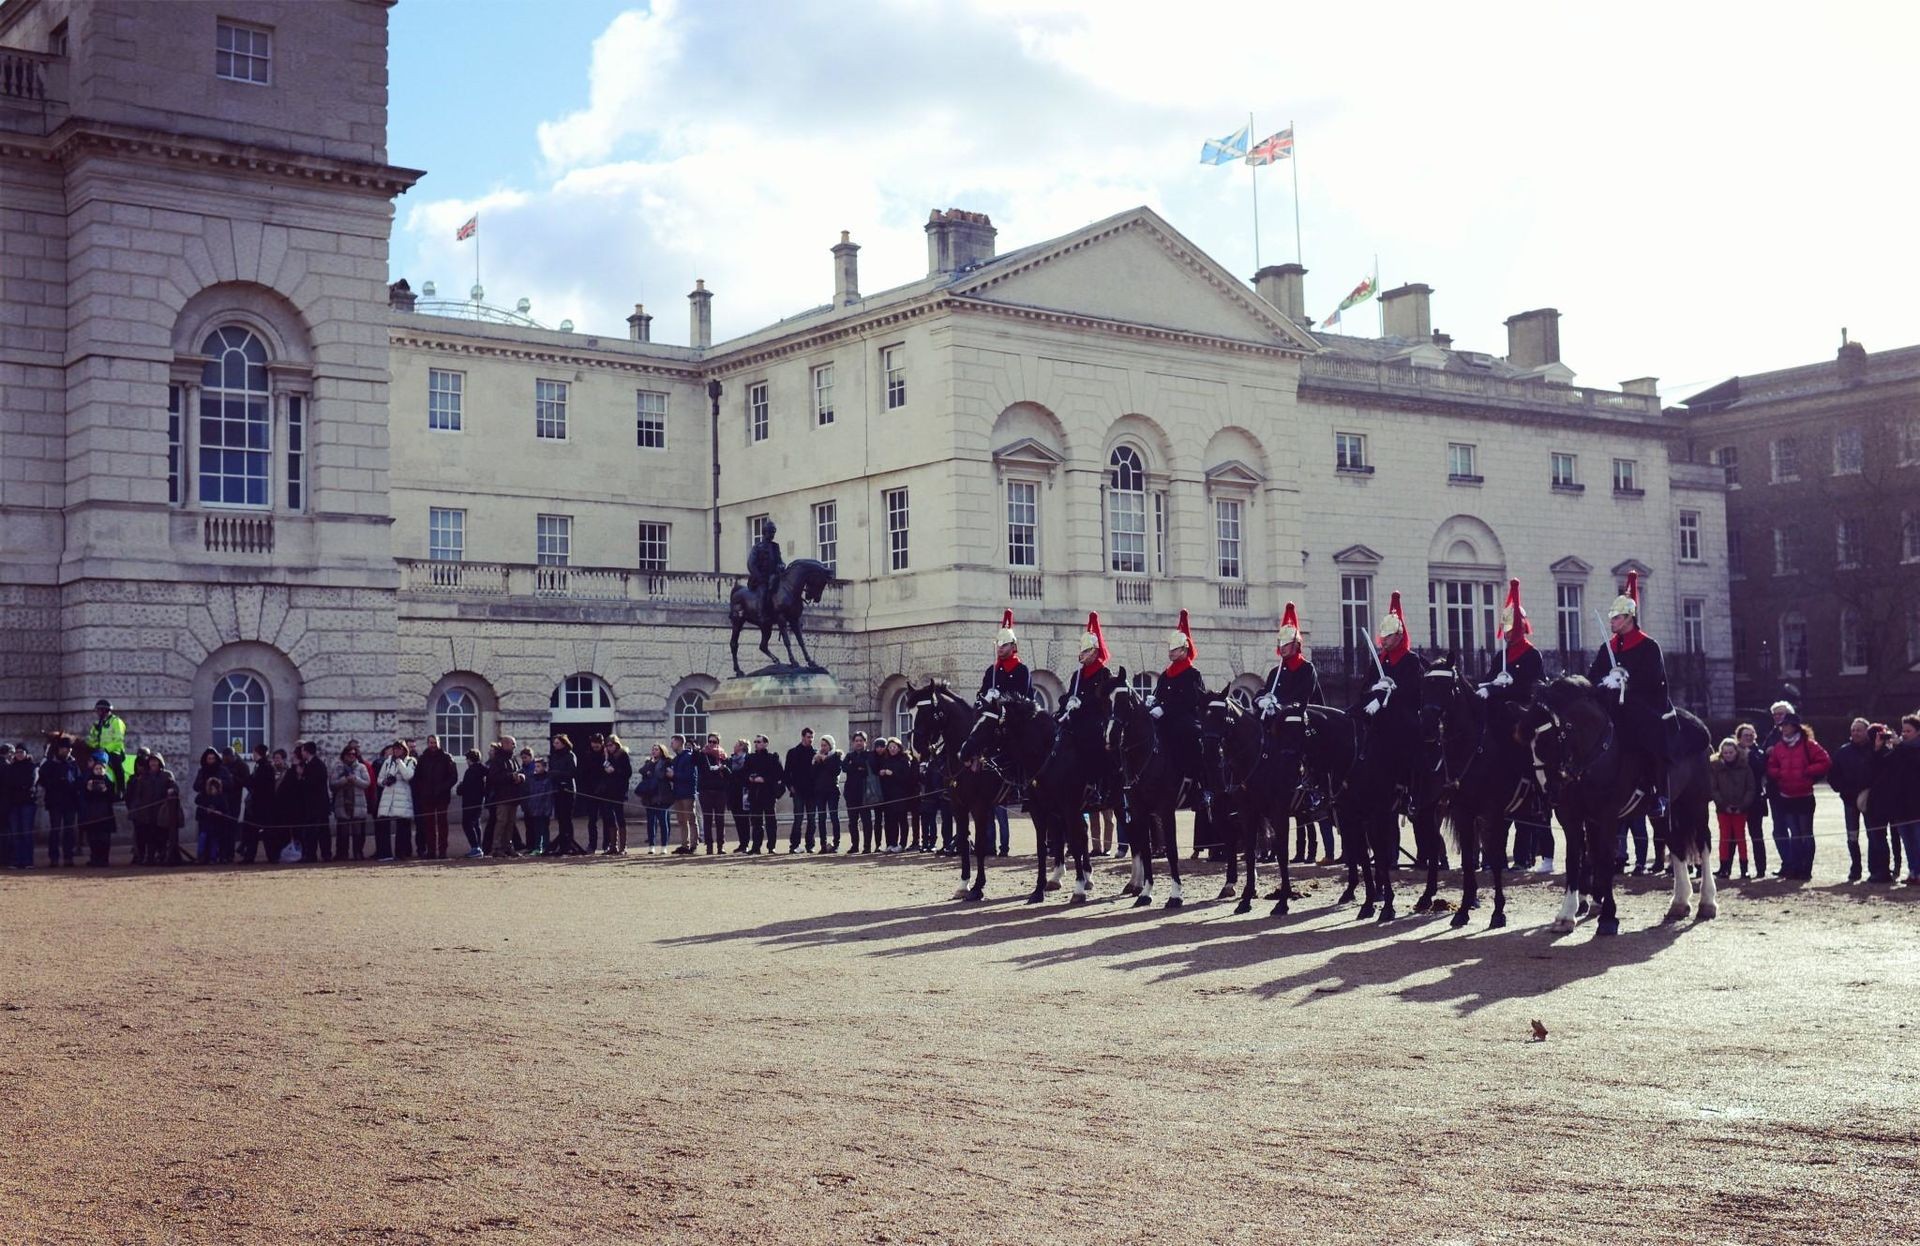 皇家骑兵卫队阅兵场(Horse Guards Parade)